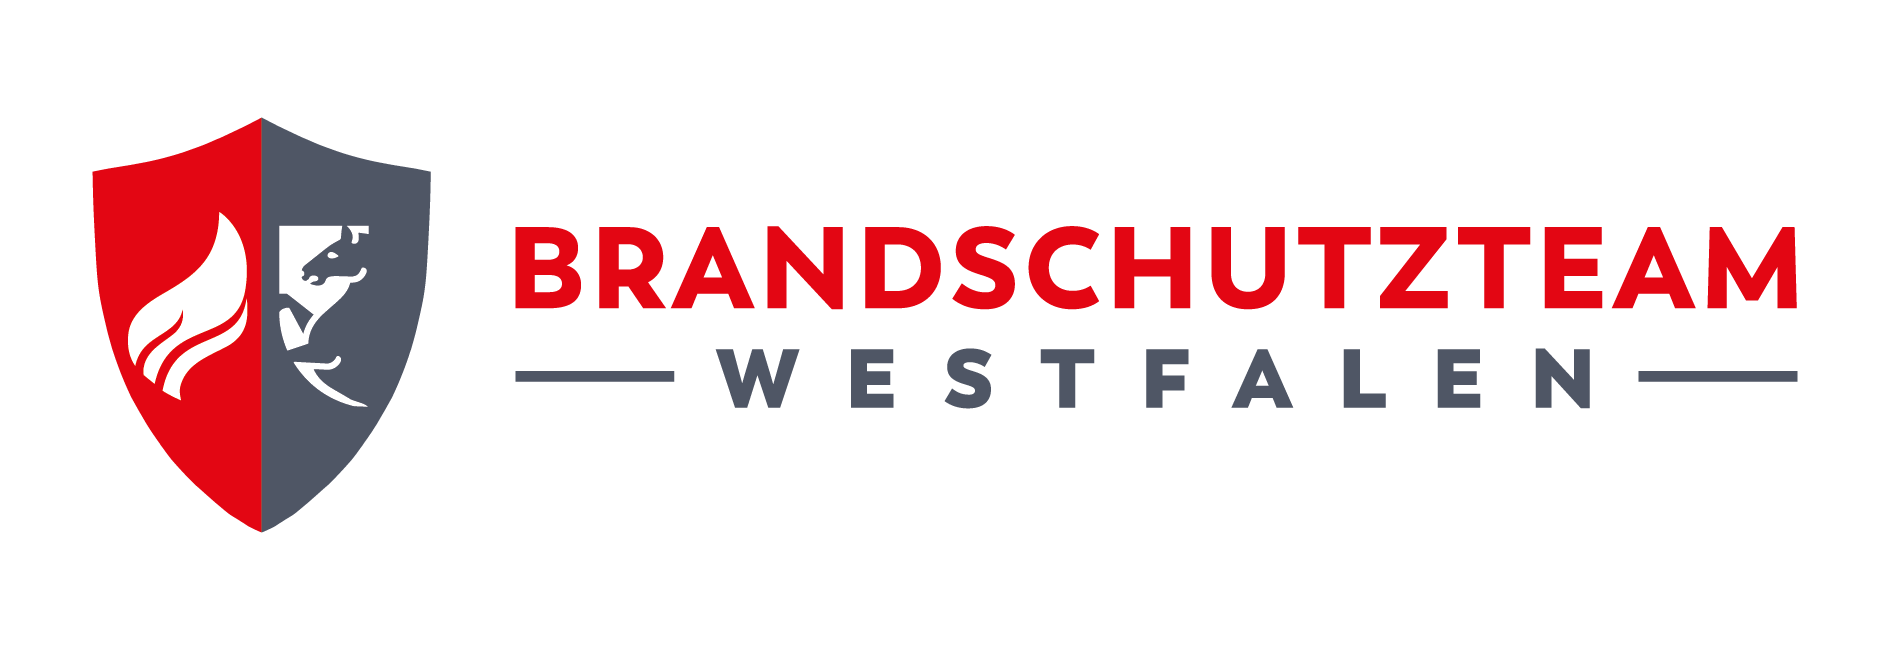 Logo Brandschutzteam Westfalen Gmbh & Co. KG